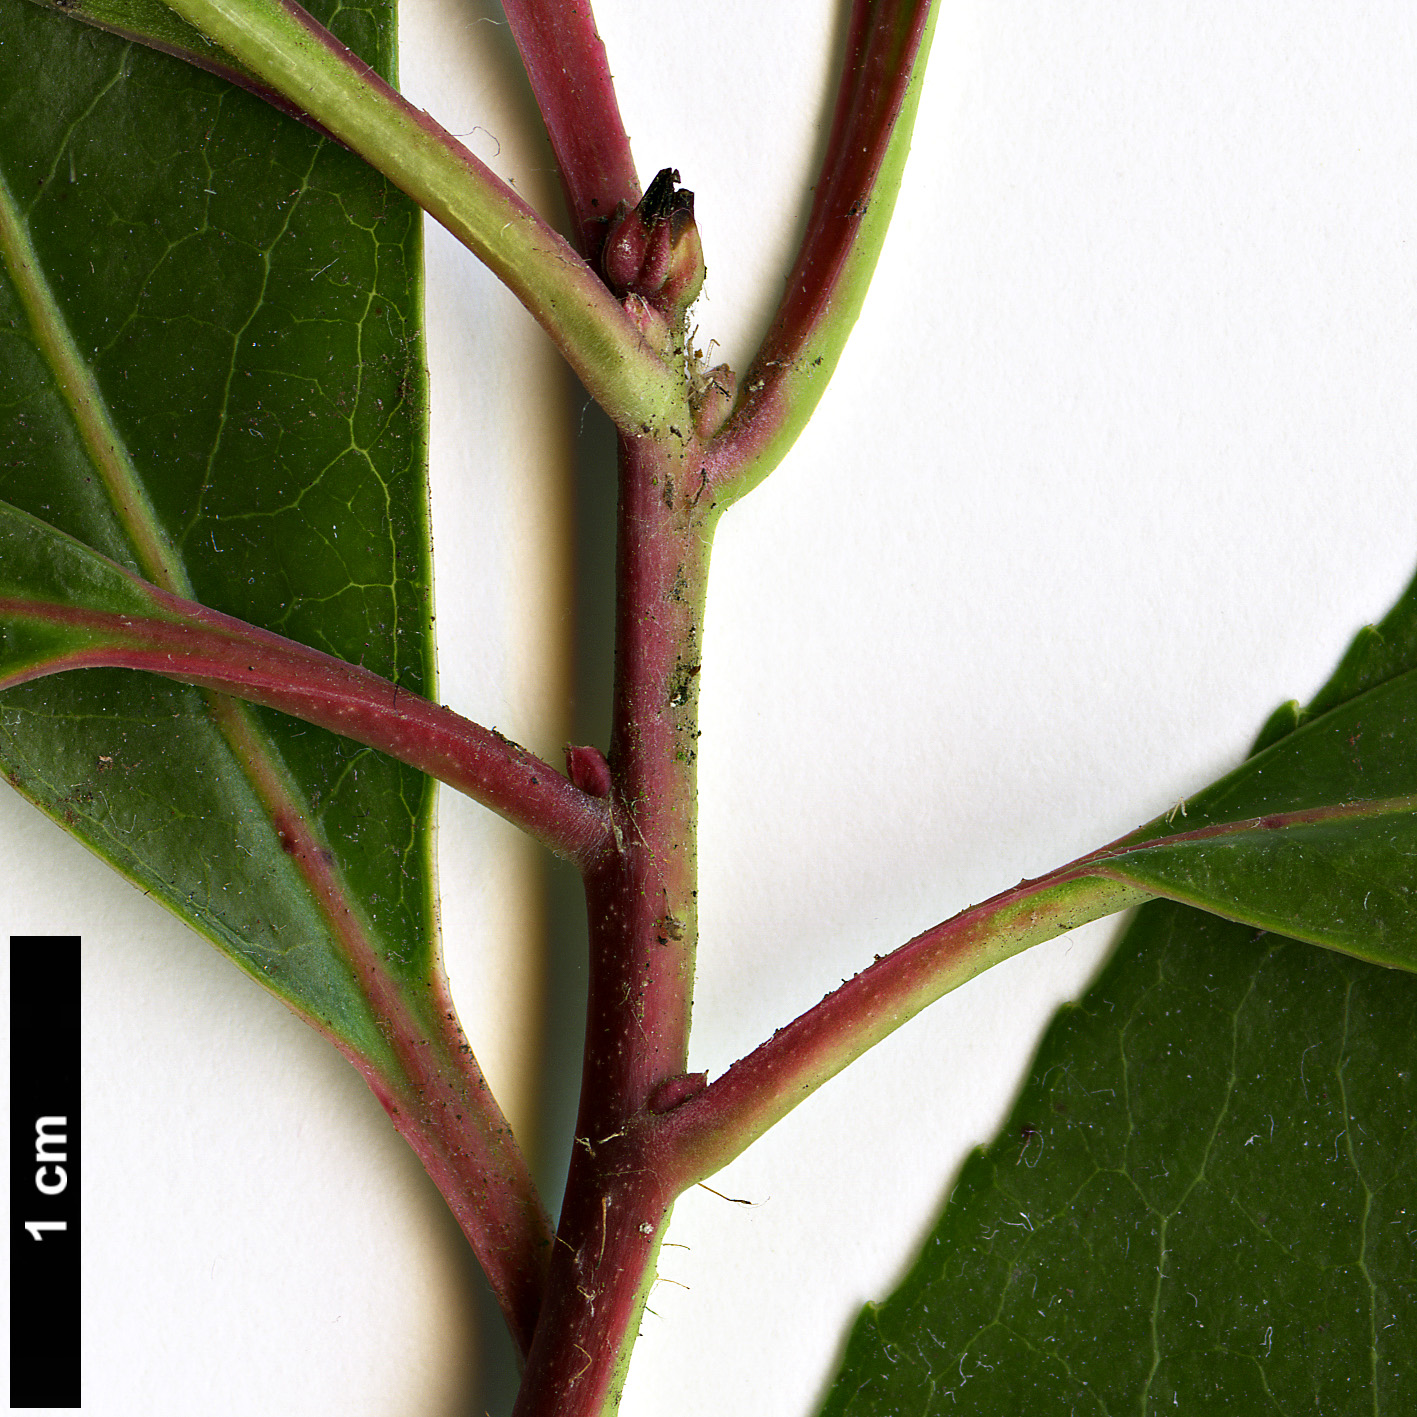 High resolution image: Family: Ericaceae - Genus: Arbutus - Taxon: unedo